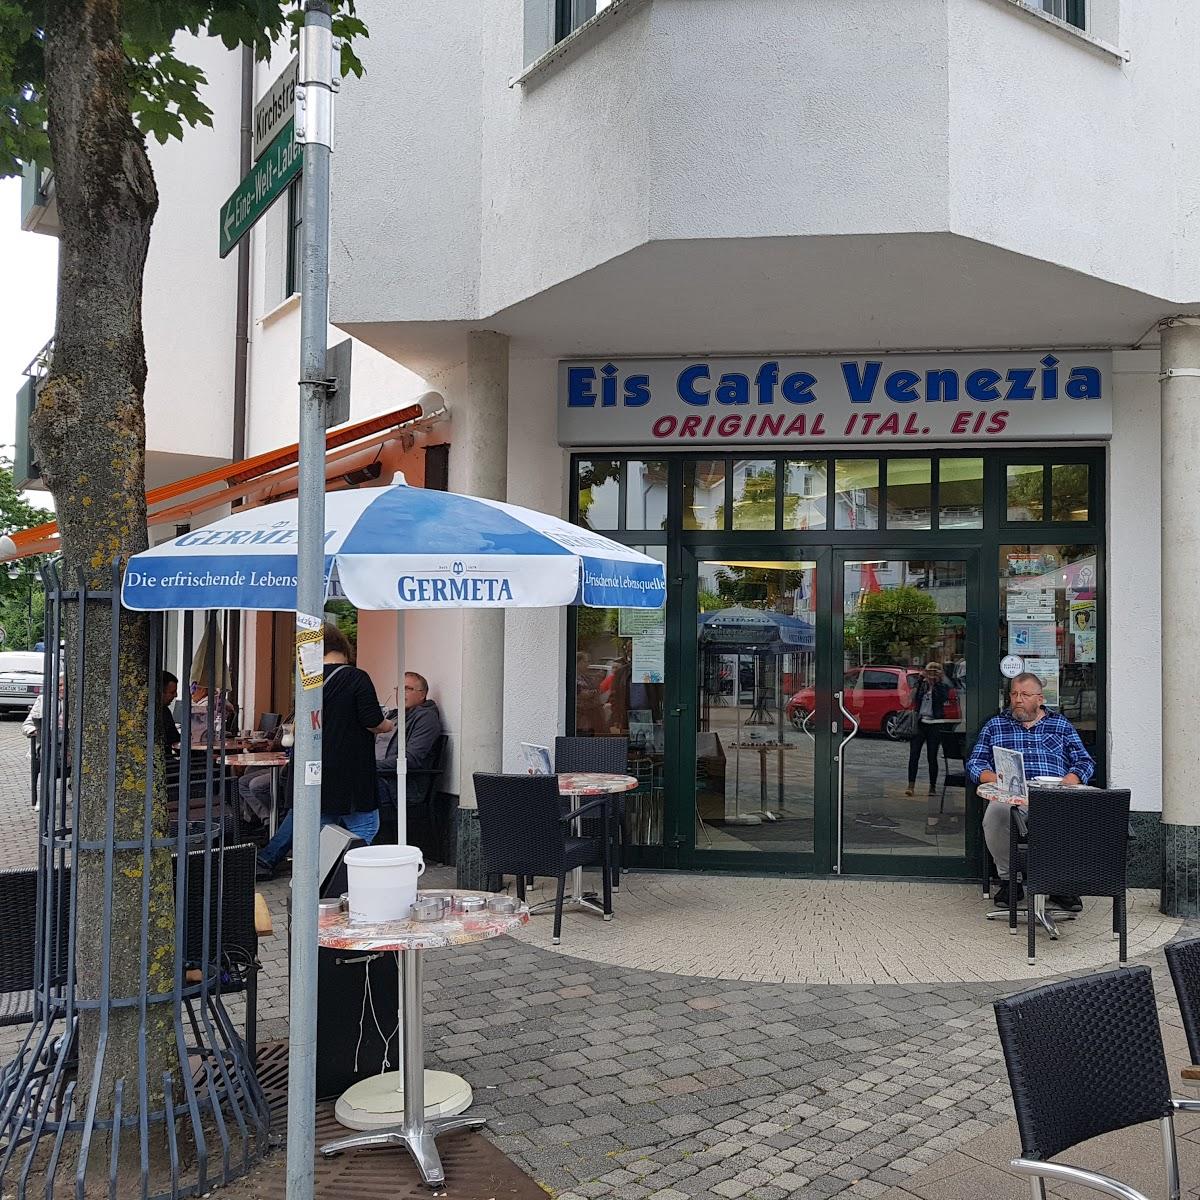 Restaurant "Eiscafé Venezia" in  Marsberg